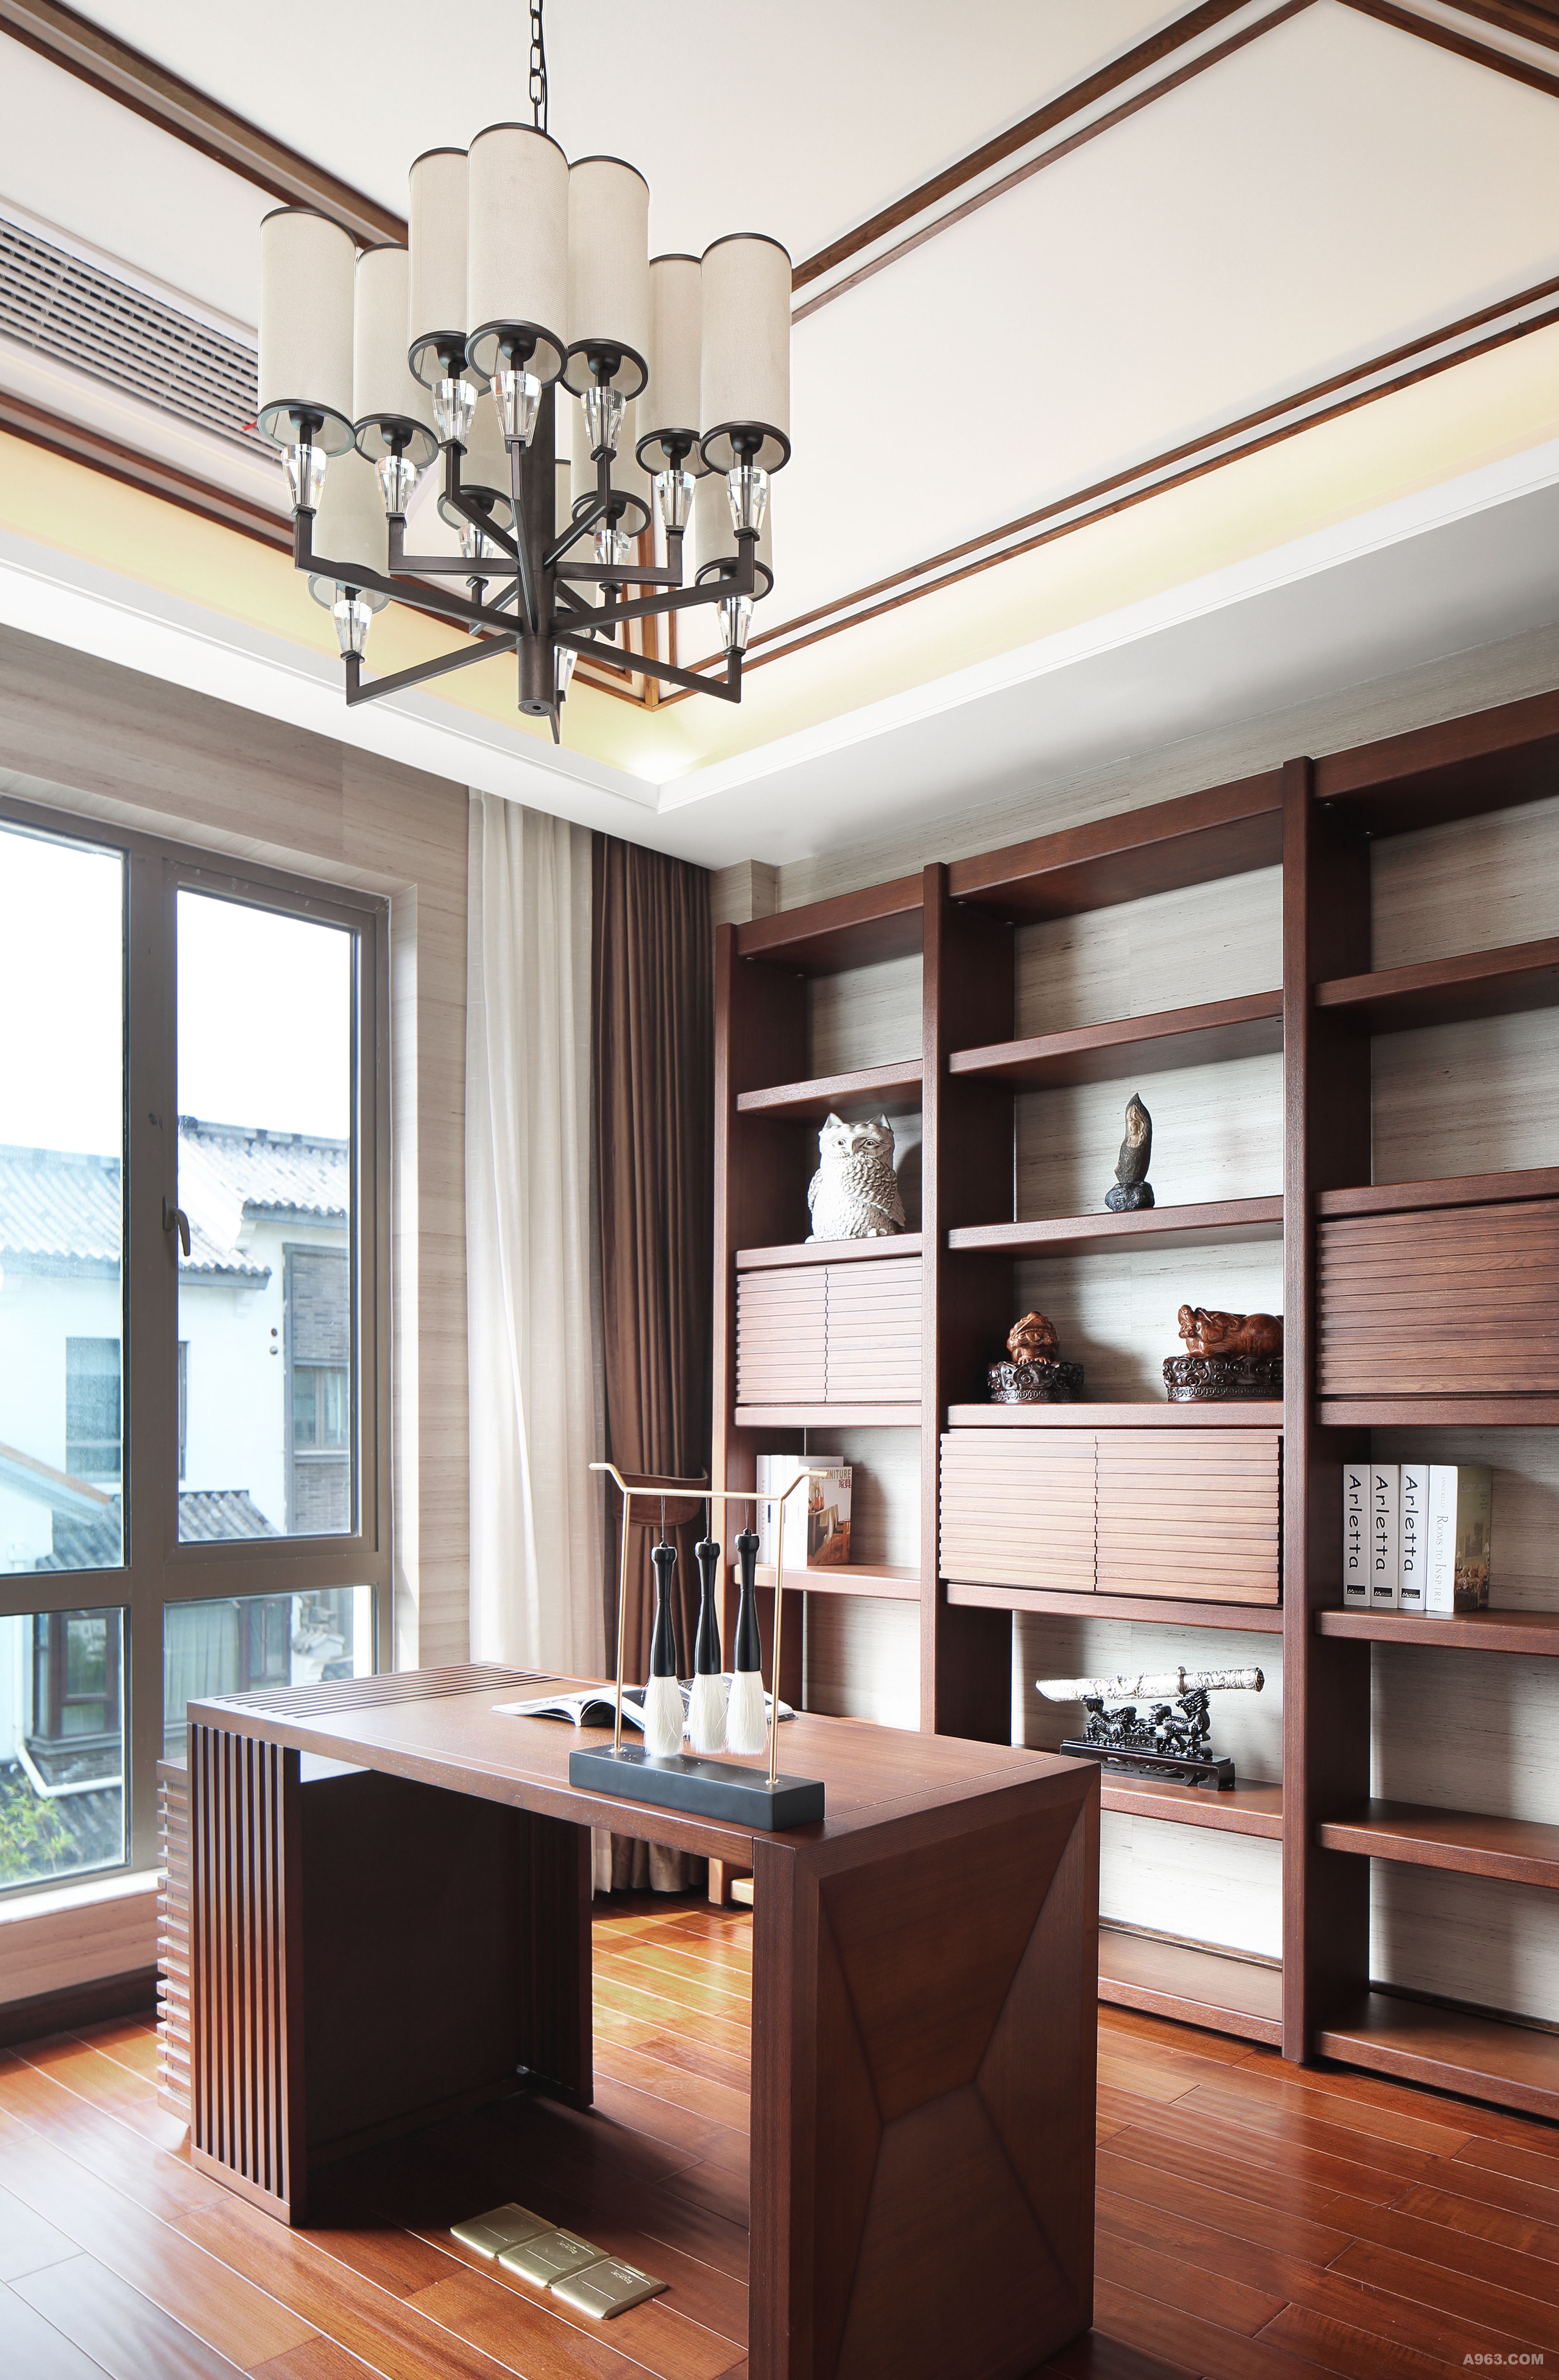 棕茶色与木色是书房的主调，虚实有致的结构让小空间也充满趣味。